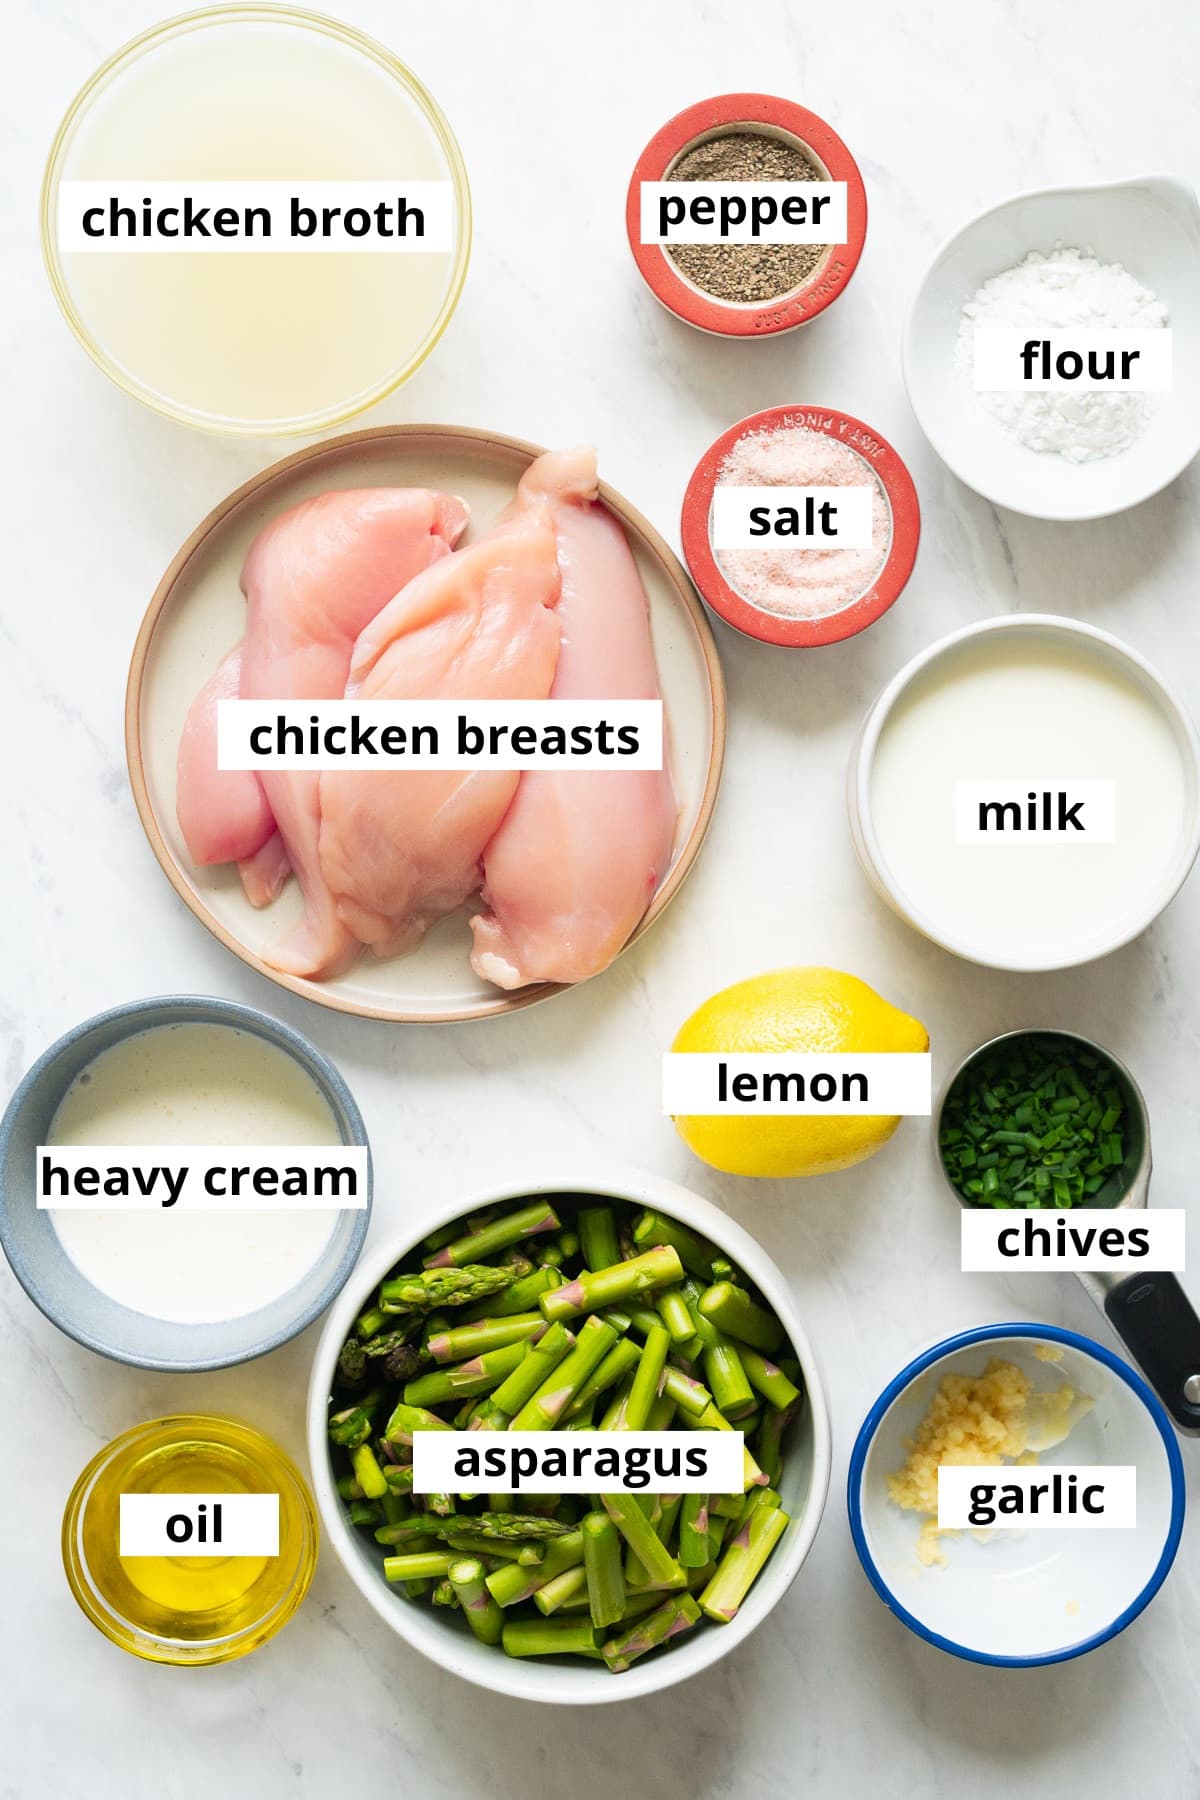 Chicken breasts, chicken broth, milk, flour, salt, pepper, lemon, heavy cream, asparagus, chives, garlic and oil.